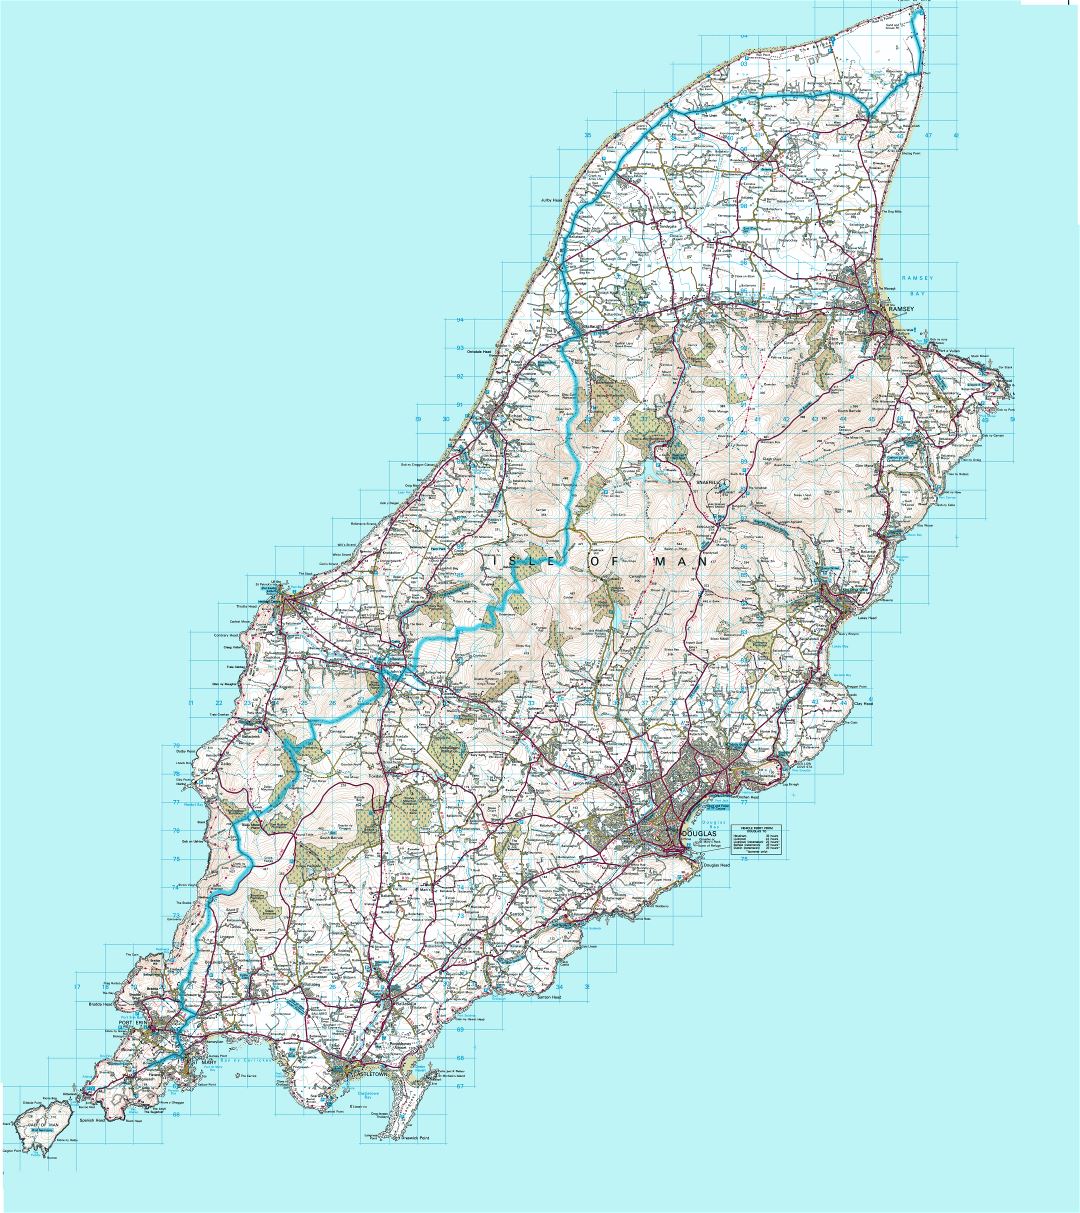 Mapa grande topográfico detallado de la Isla de Man